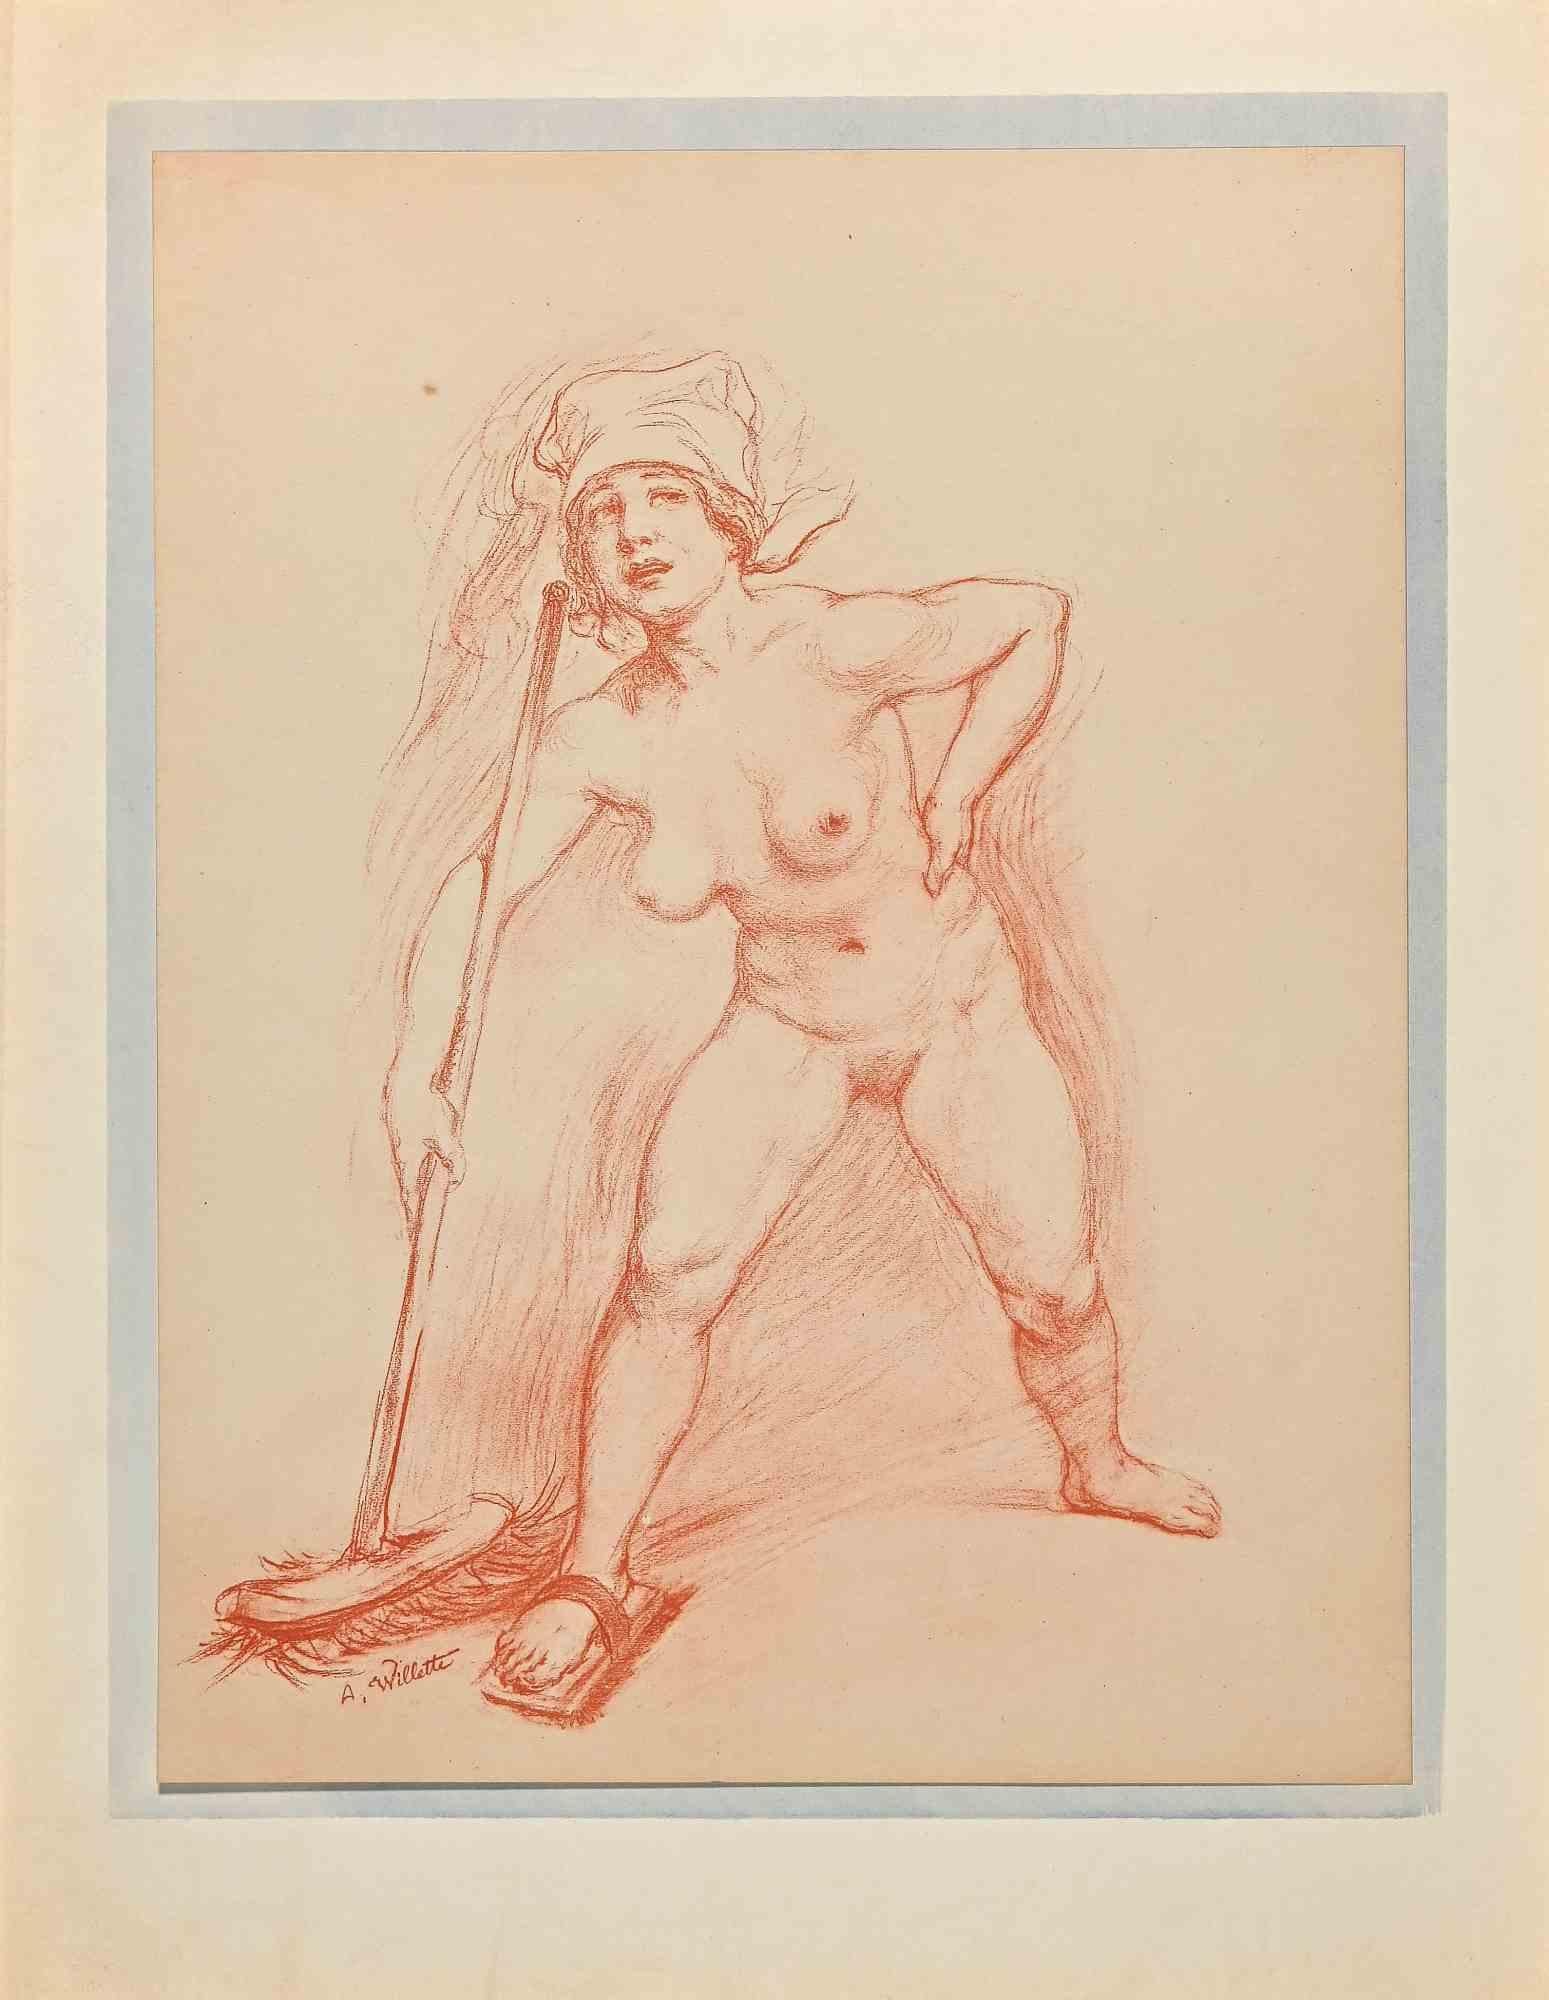 Reinigender Akt - Lithographie von Adolphe Willette - Anfang 20. Jahrhundert 